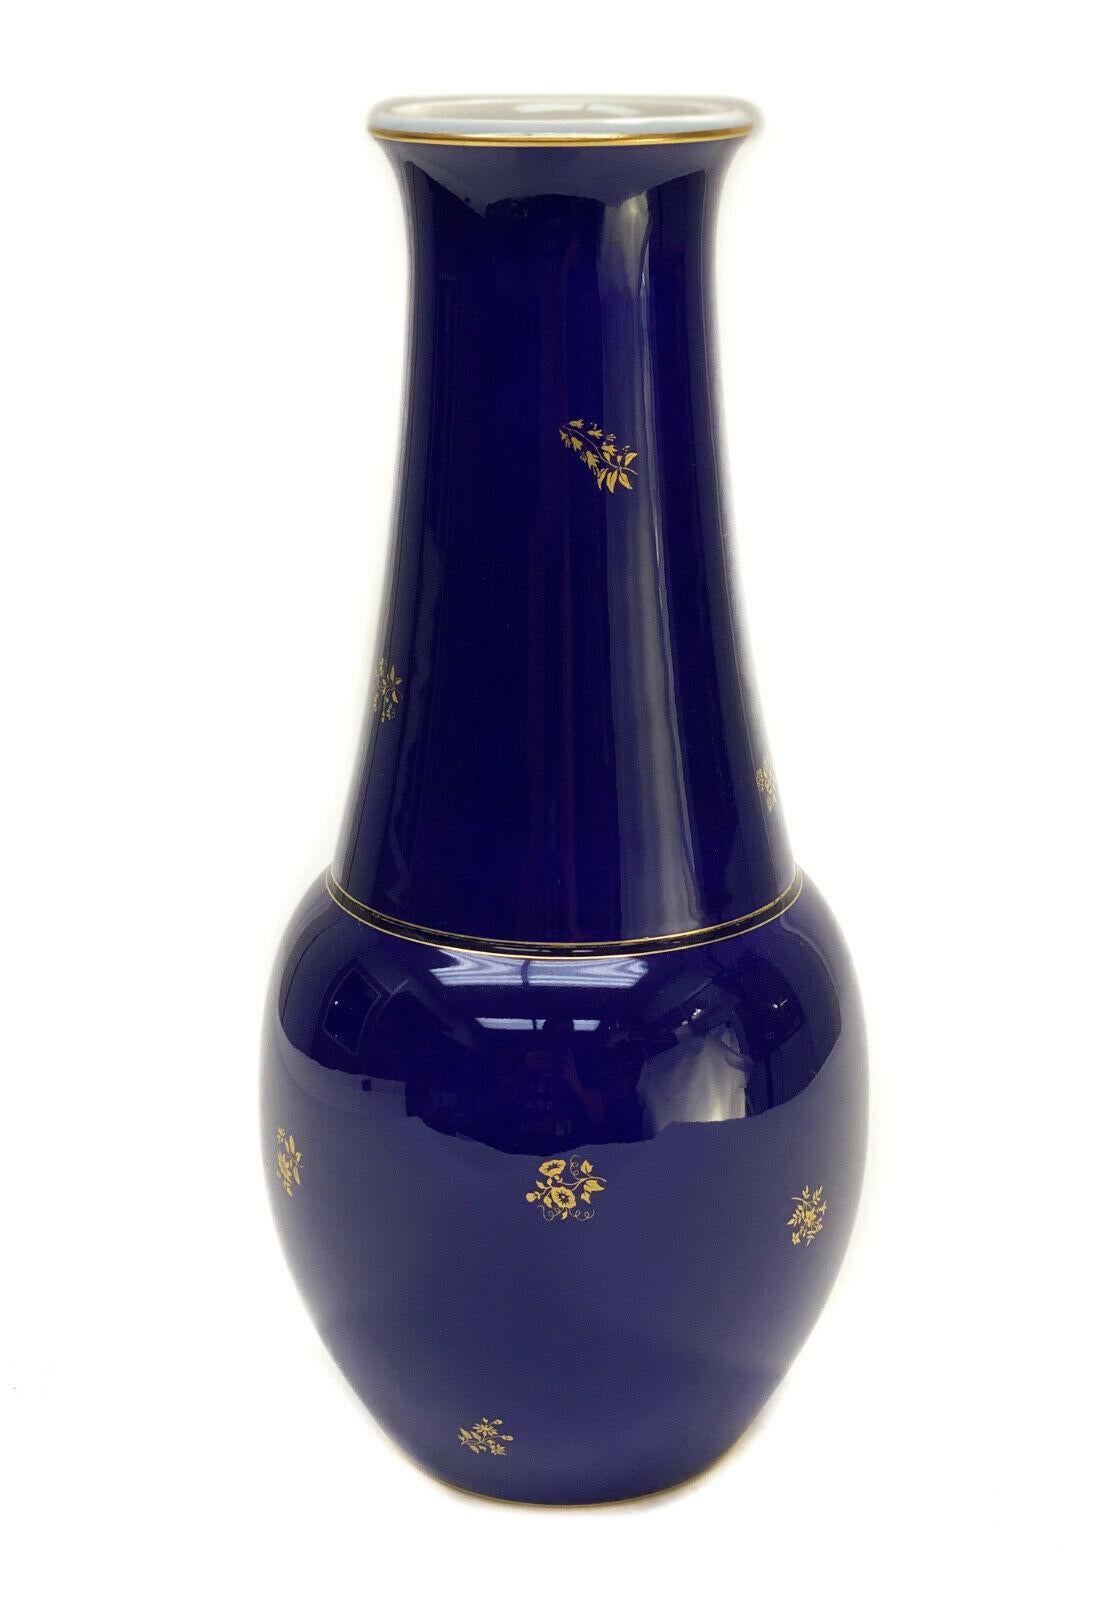 Manufacture de Sèvres Vase de 12 pouces en porcelaine bleu cobalt et dorée, 1926.

Fond bleu cobalt et doré avec des feuilles dorées sur toute la surface. Marque de la Manufacture de Sèvres sur le dessous, datée de 1925.

Informations